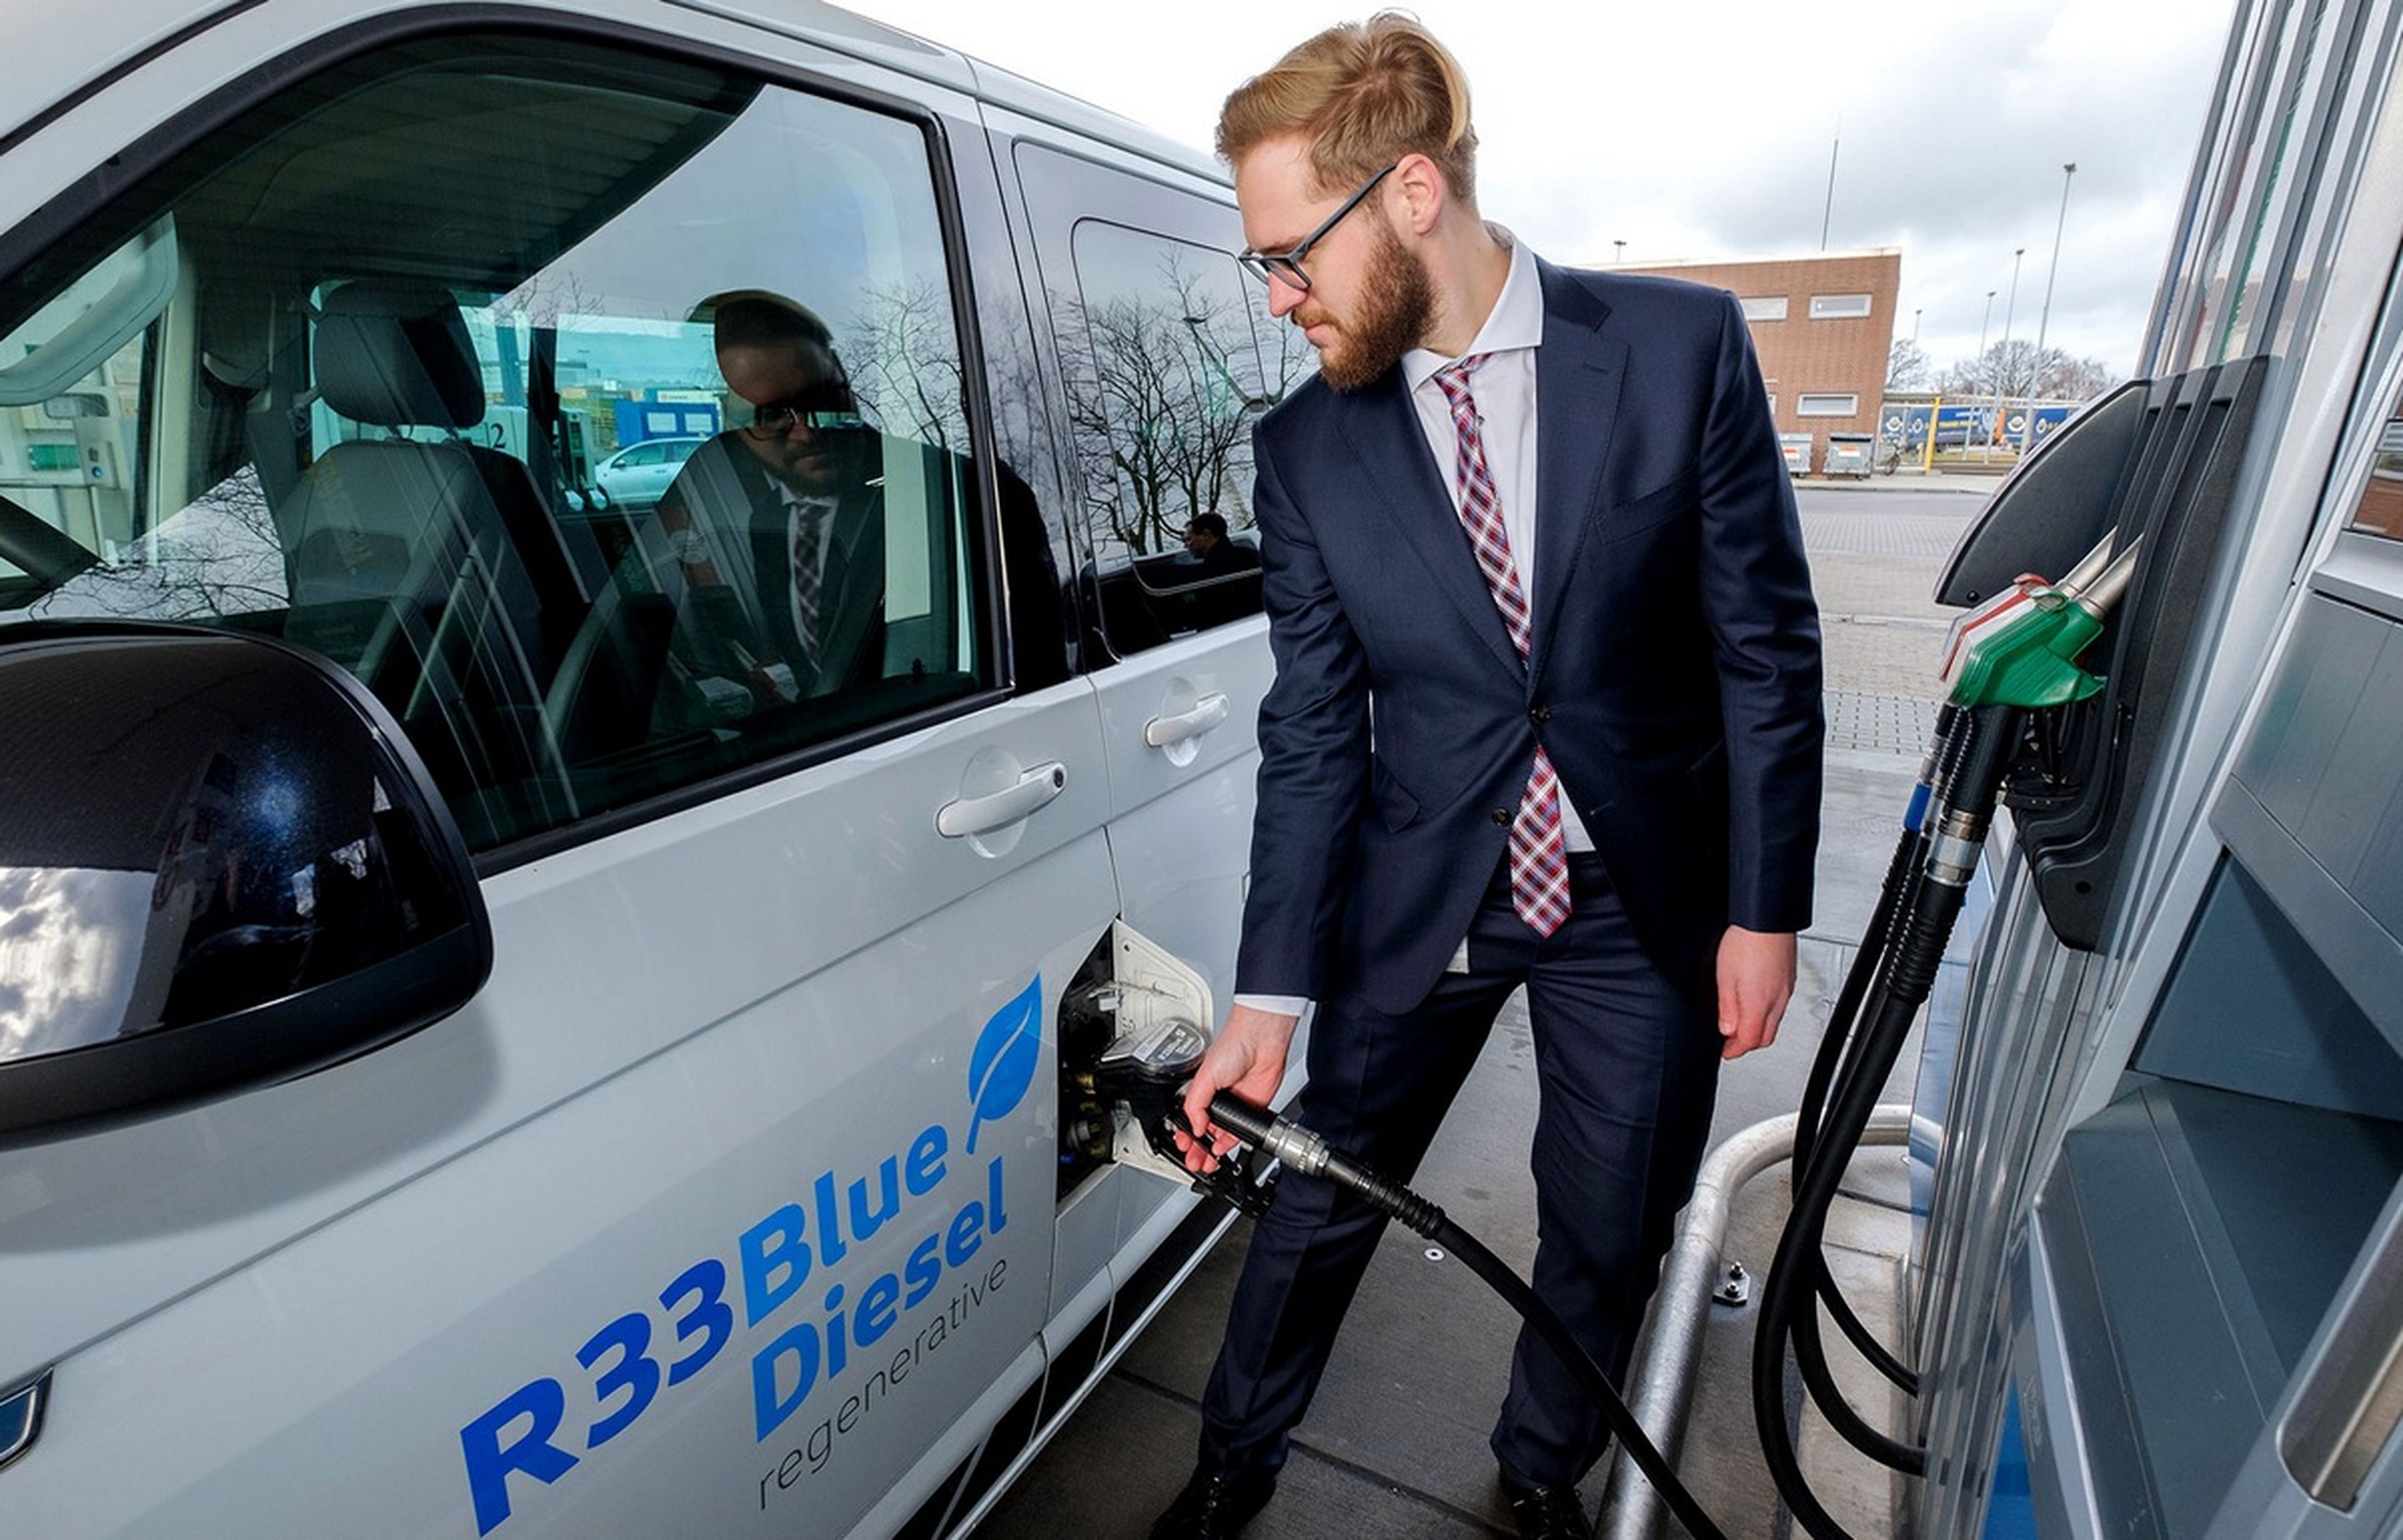 Qué es el Diésel R33, el nuevo diésel azul que revolucionará las gasolineras